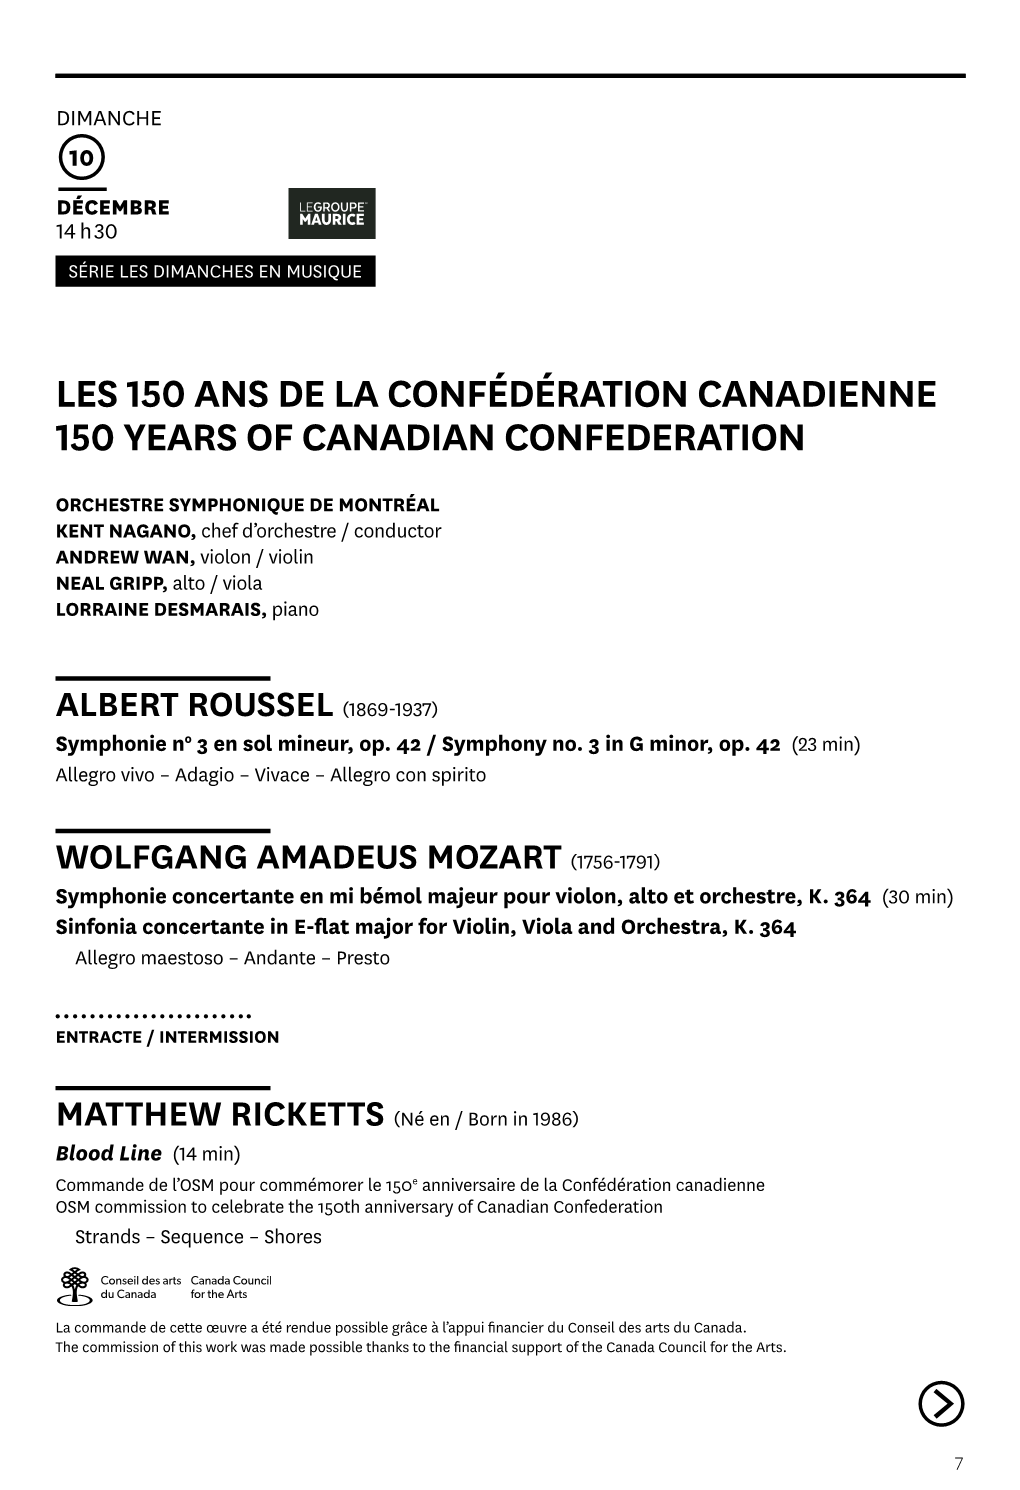 Les 150 Ans De La Confédération Canadienne 150 Years of Canadian Confederation